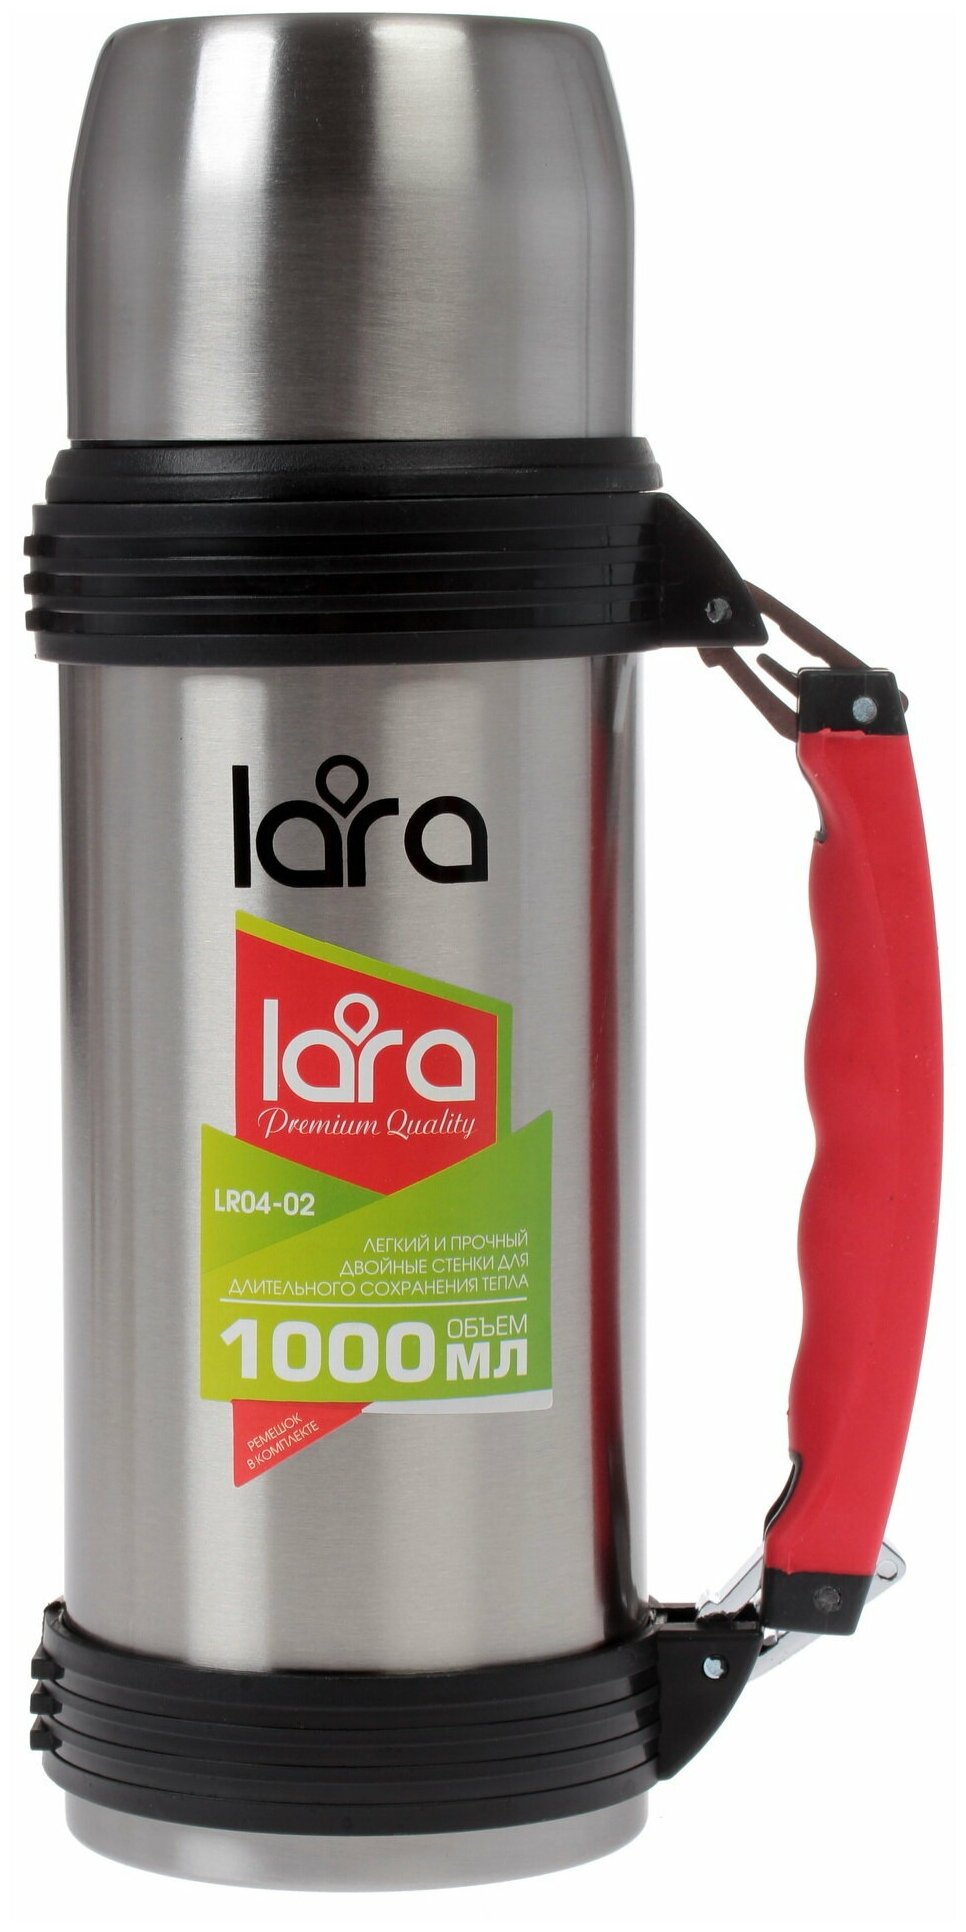 Классический термос LARA LR04-02 1 л